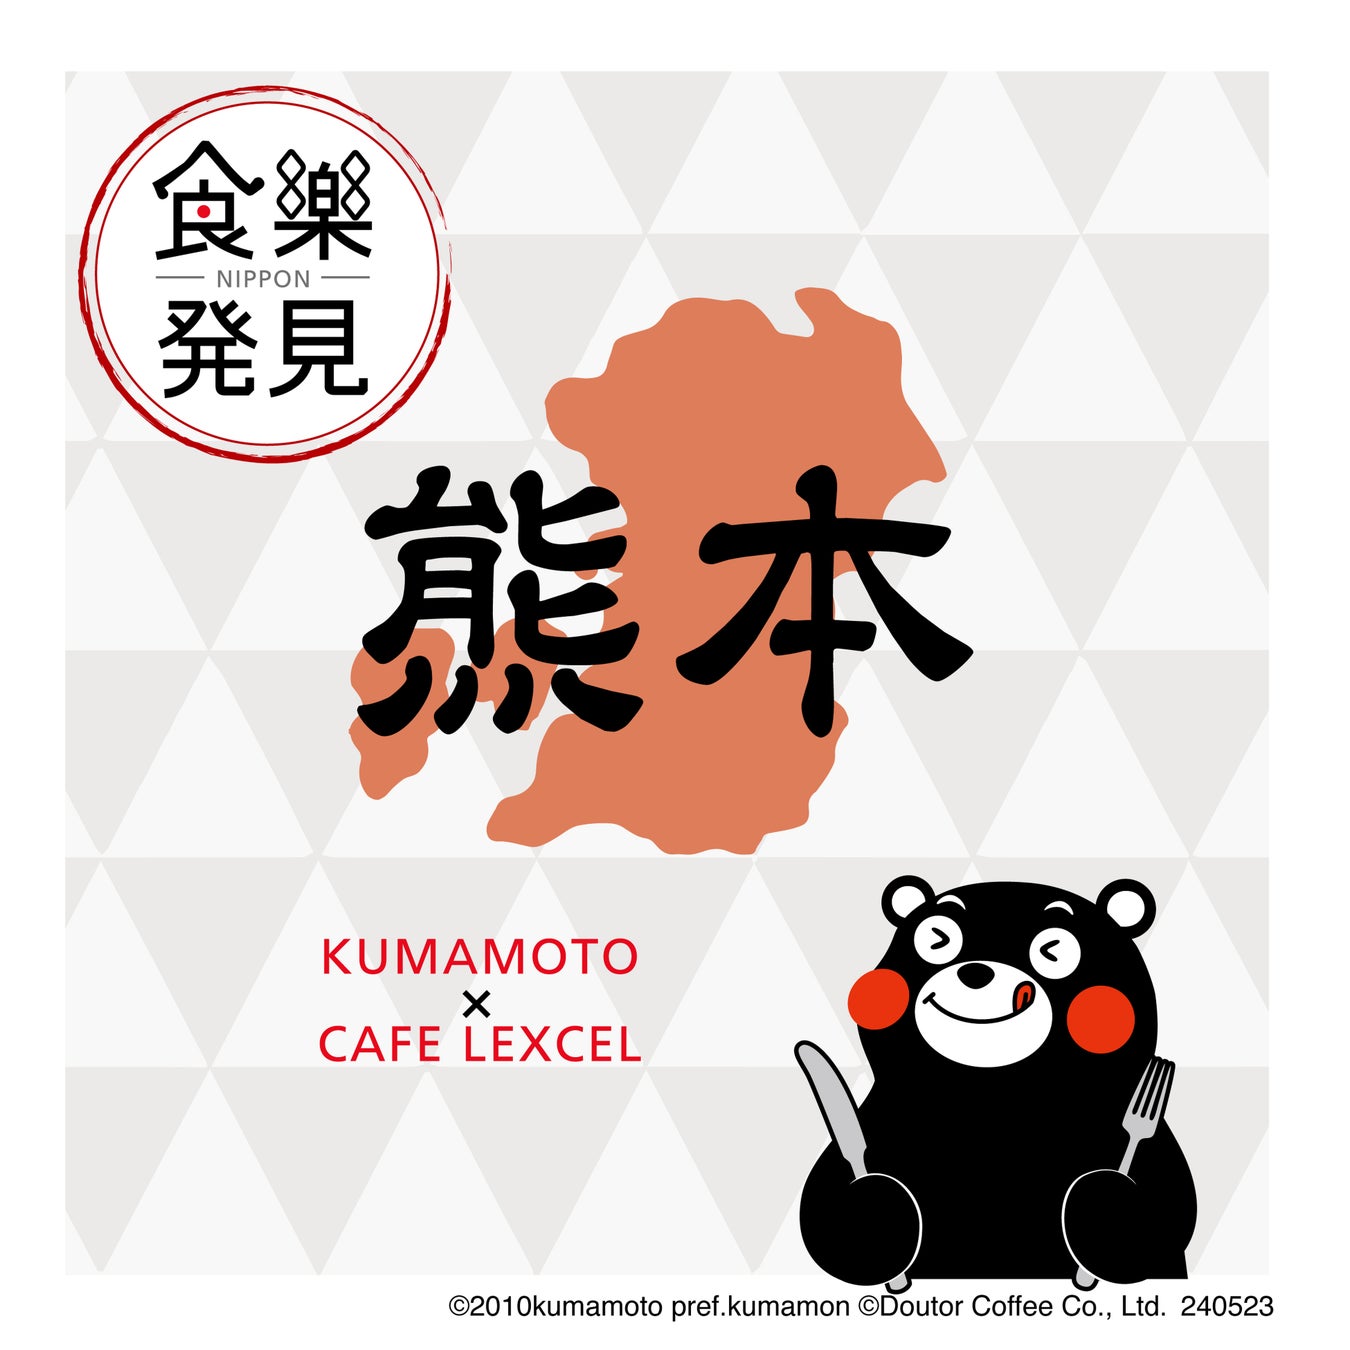 食を通じて日本のよいものをお届け　「NIPPON食樂発見」第12弾in熊本　カフェ レクセルで５月23日よりスタート